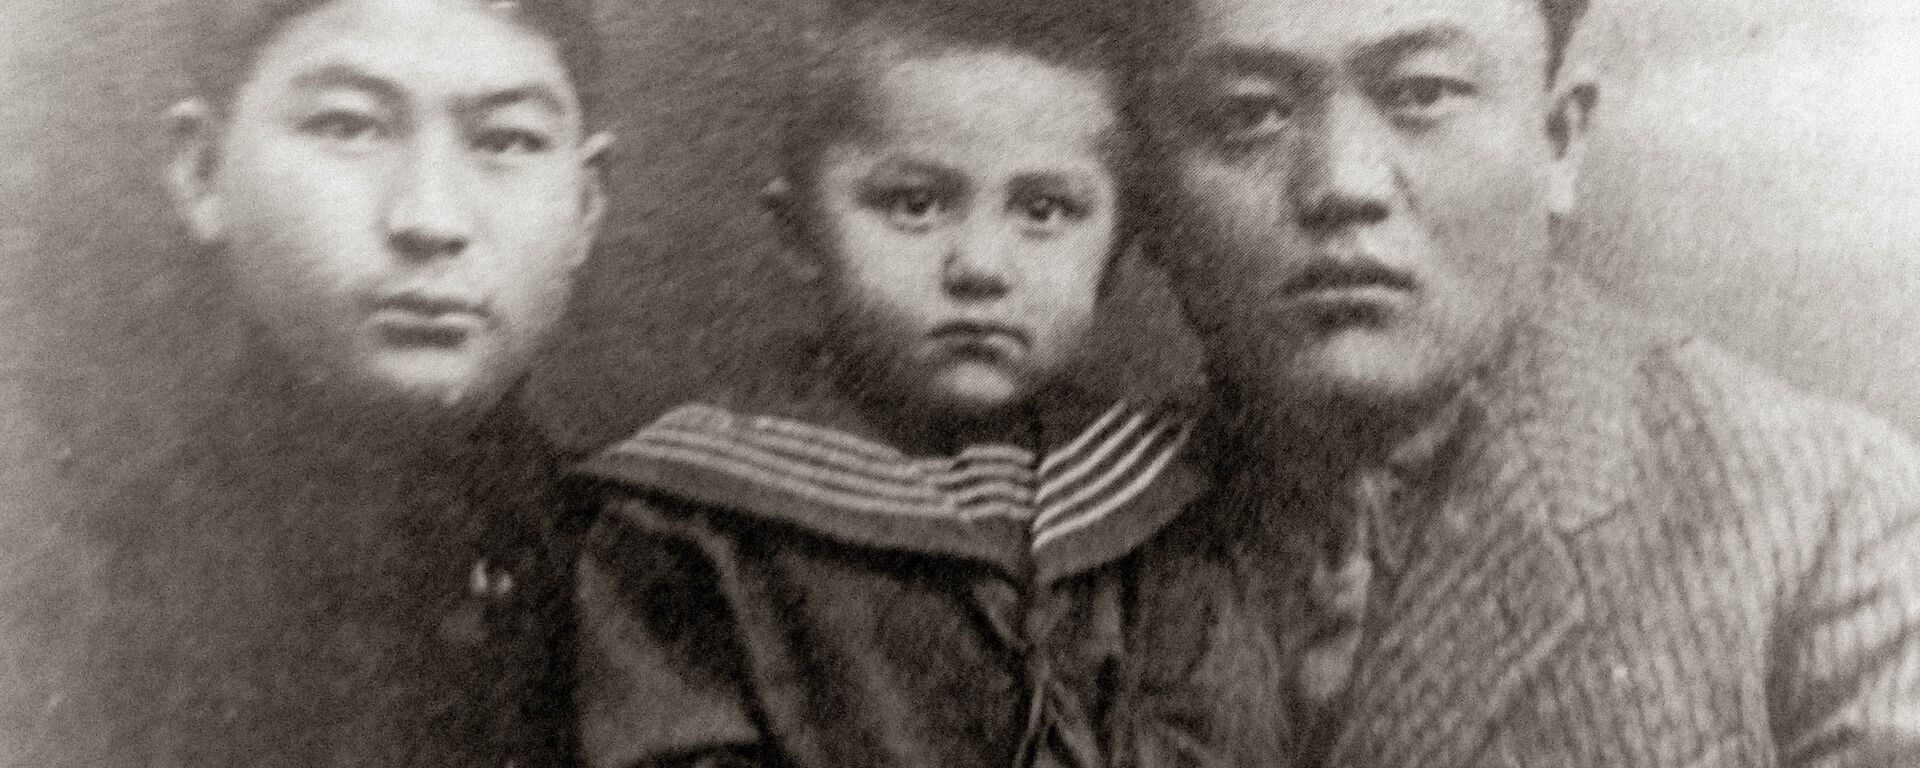 Көрүнүктүү мамлекеттик жана саясий ишмер Жусуп Абдрахманов. Архив - Sputnik Кыргызстан, 1920, 24.07.2021